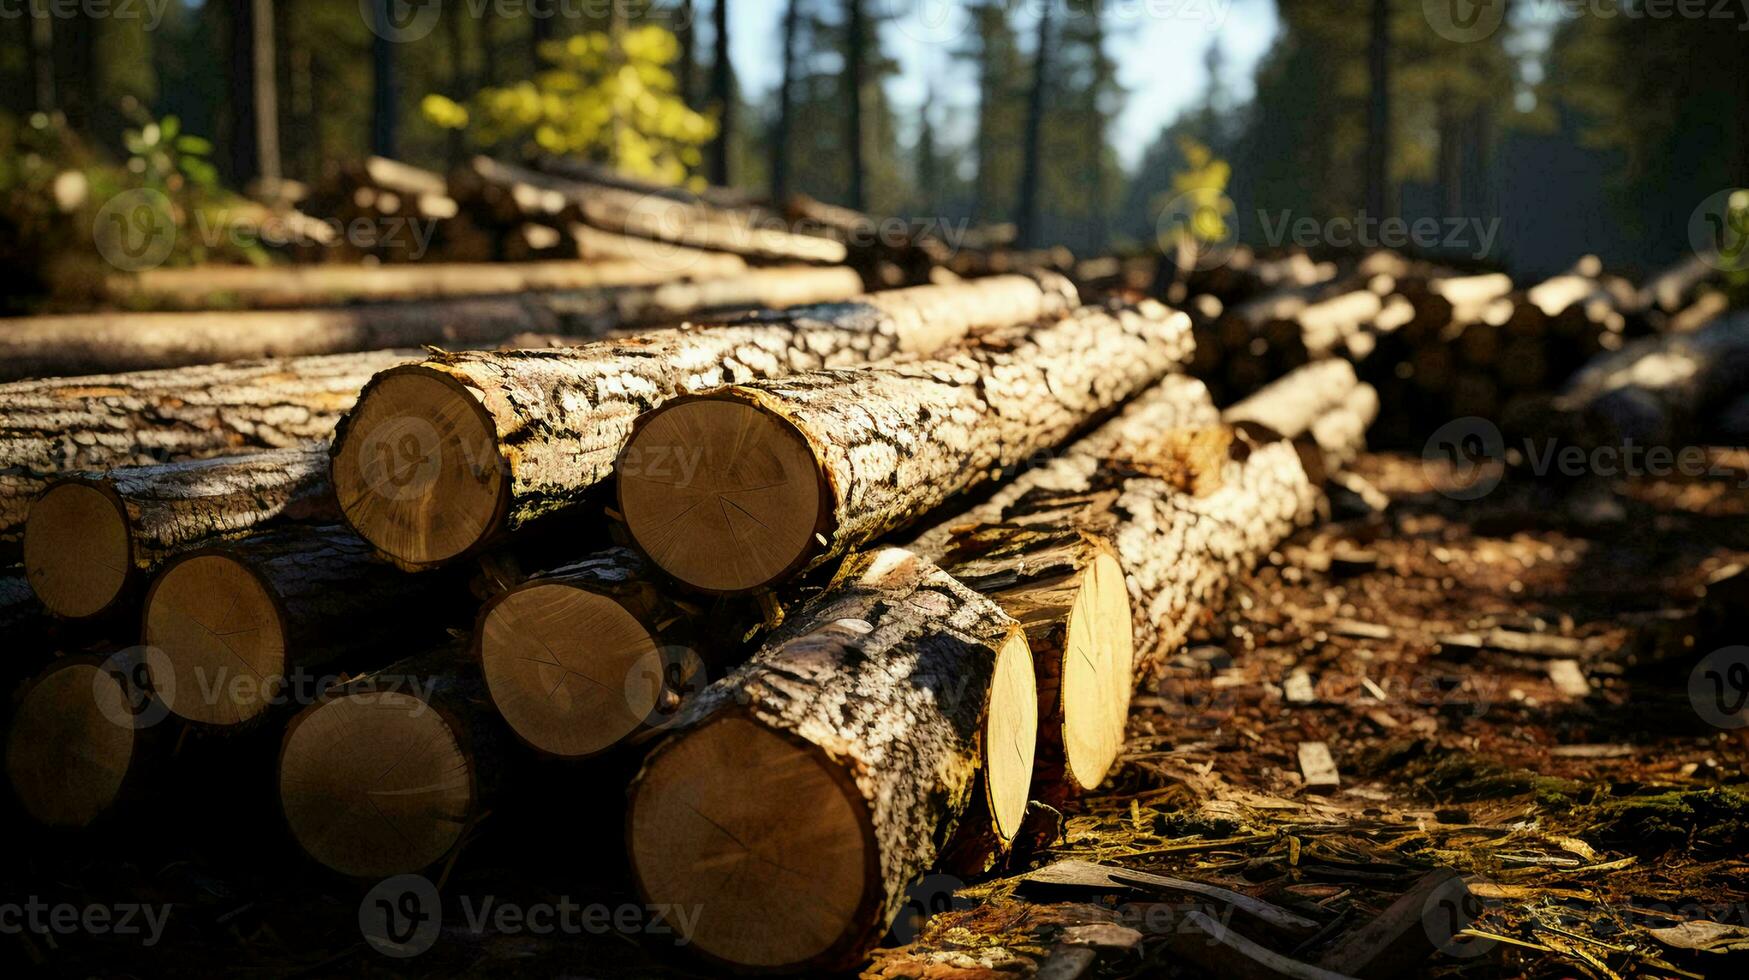 nyligen skära naturlig loggar från träd på skogsavverkning webbplats i de skog foto